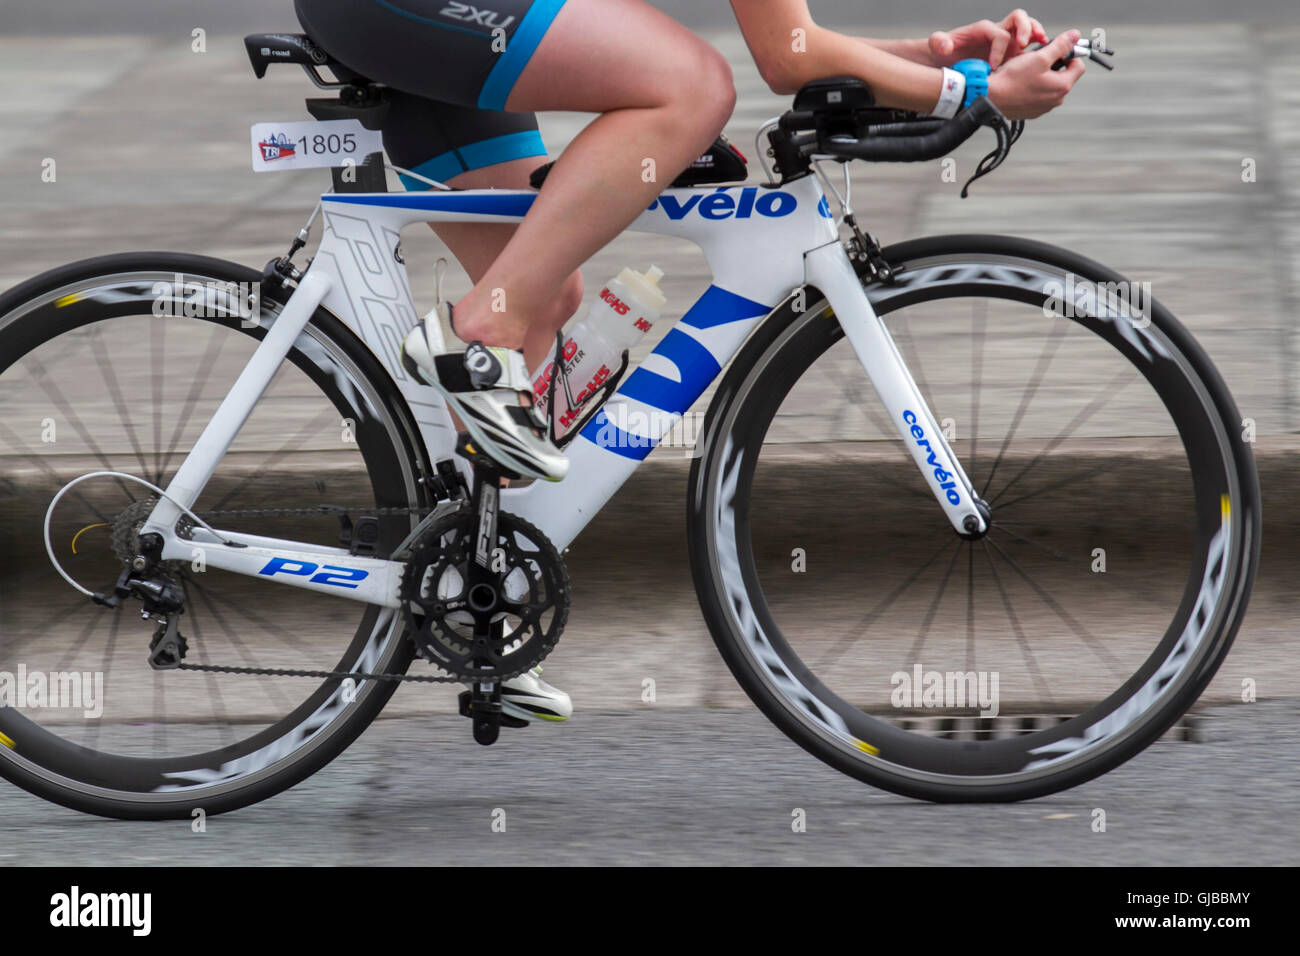 Cervelo P2 Bicicleta de carretera, cuadros de bicicleta de fibra de carbono,  monocasco composite bicicleta usada por los ciclistas en el Campeonato  Británico de 2016 Triatlón de élite como Tri Liverpool alberga